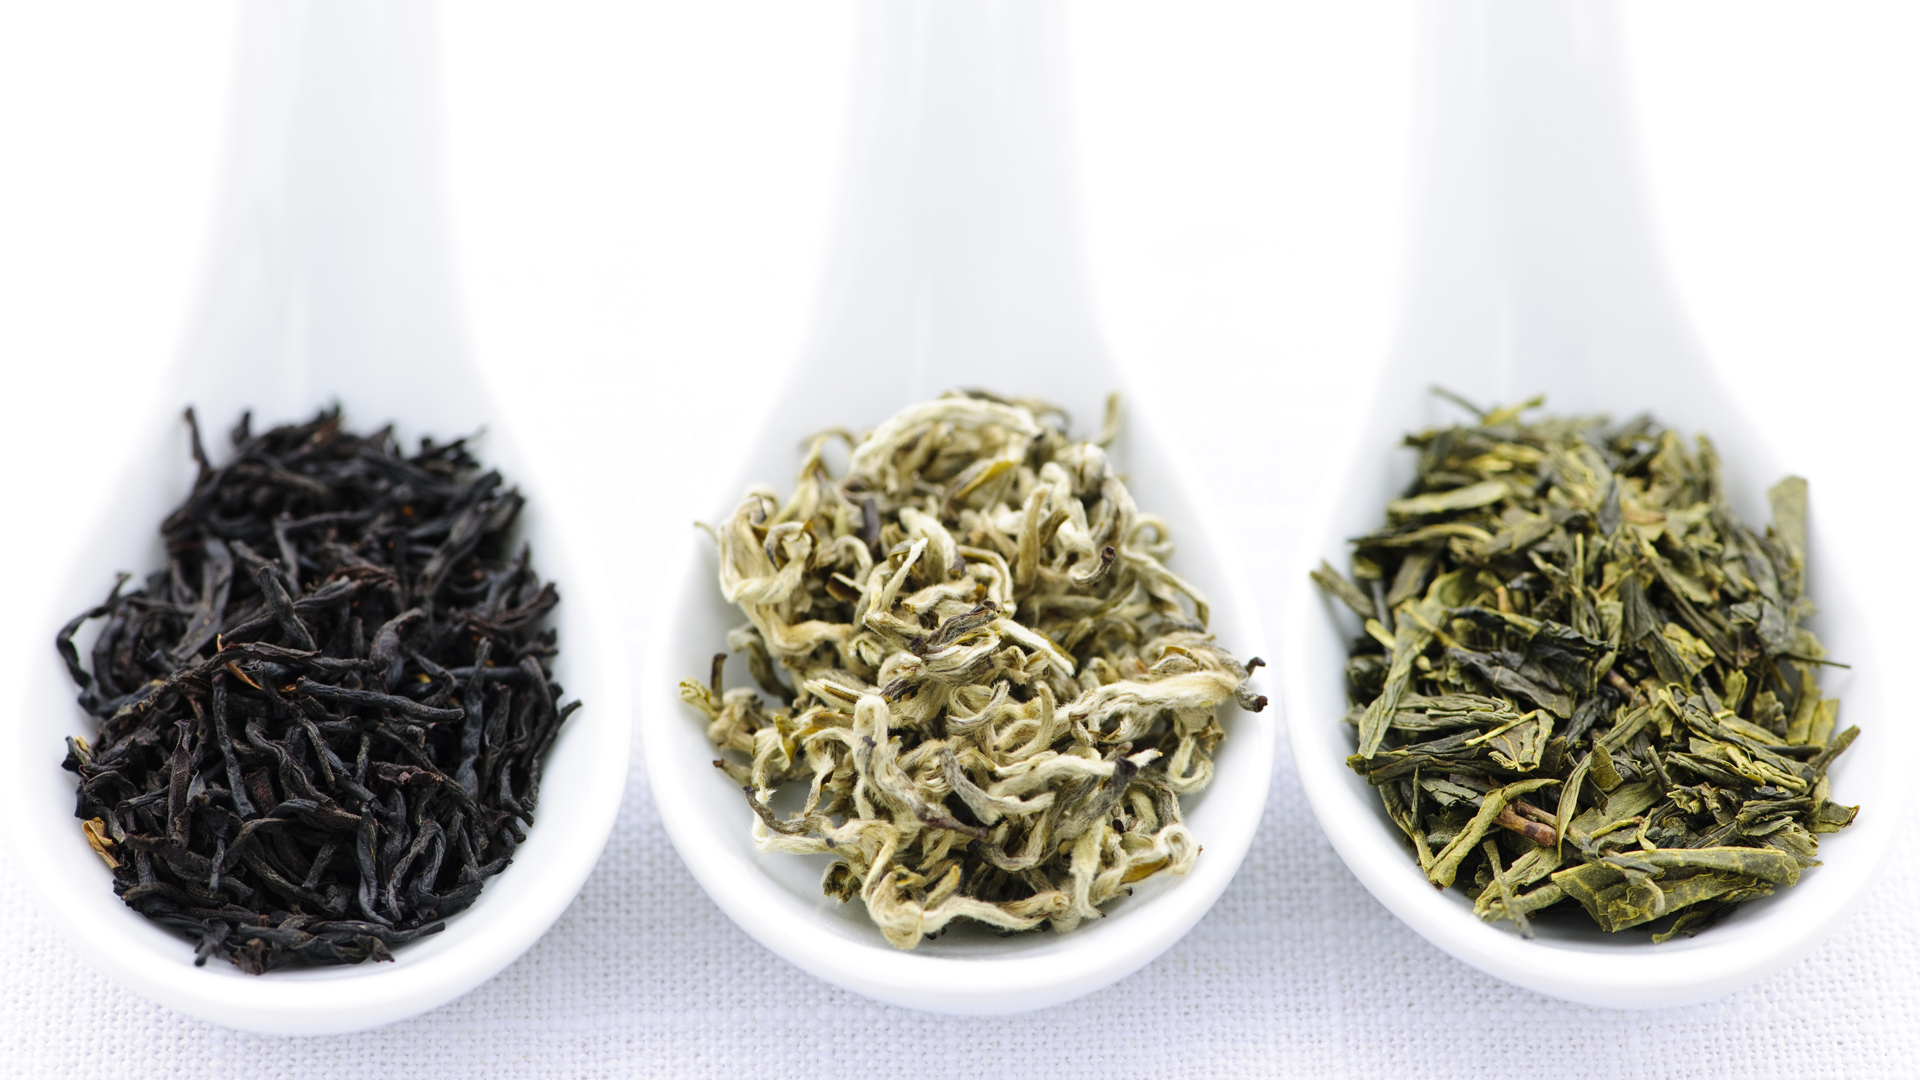 Bạch trà được xem là “vua của các loại trà” và có đến 9 công dụng tuyệt vời cho sức khỏe. Cụ thể là những công dụng gì? Bài viết này sẽ trả lời cho bạn!